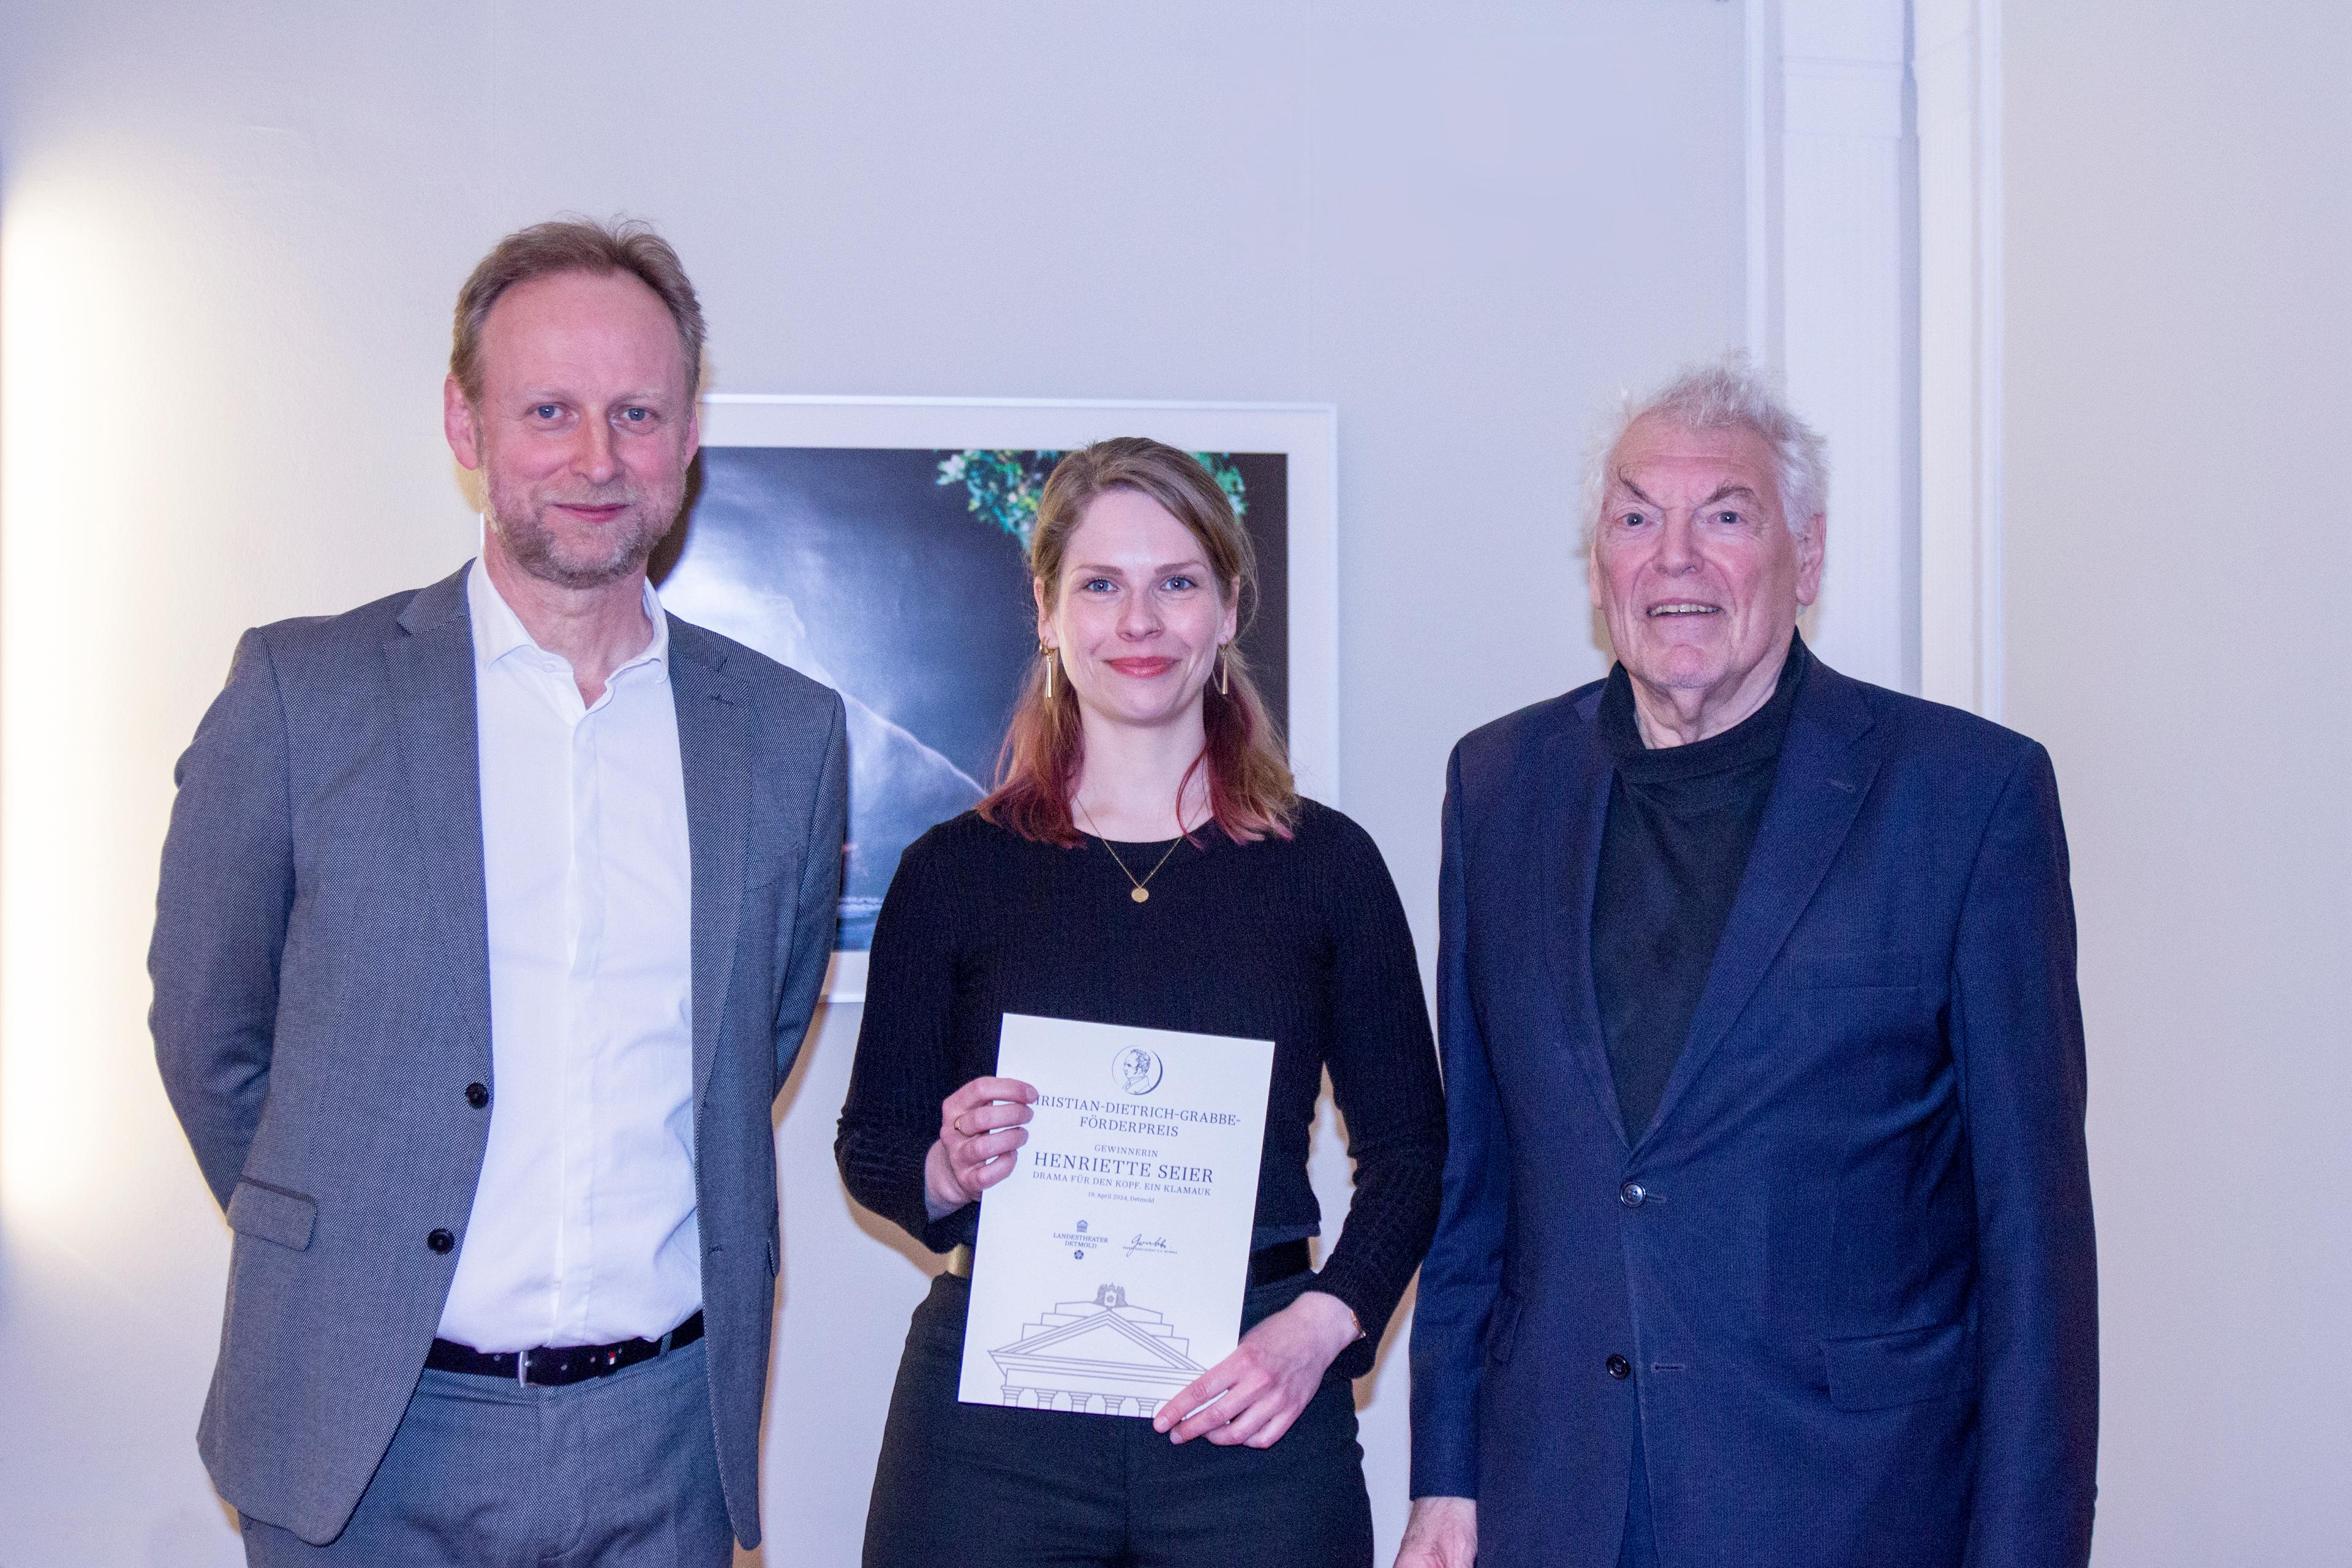 v.l.: Intendant Georg Heckel, Gewinnerin Henriette Seier, Präsident der Grabbe-Gesellschaft e.V. Detmold Dr. Peter  Schütze  